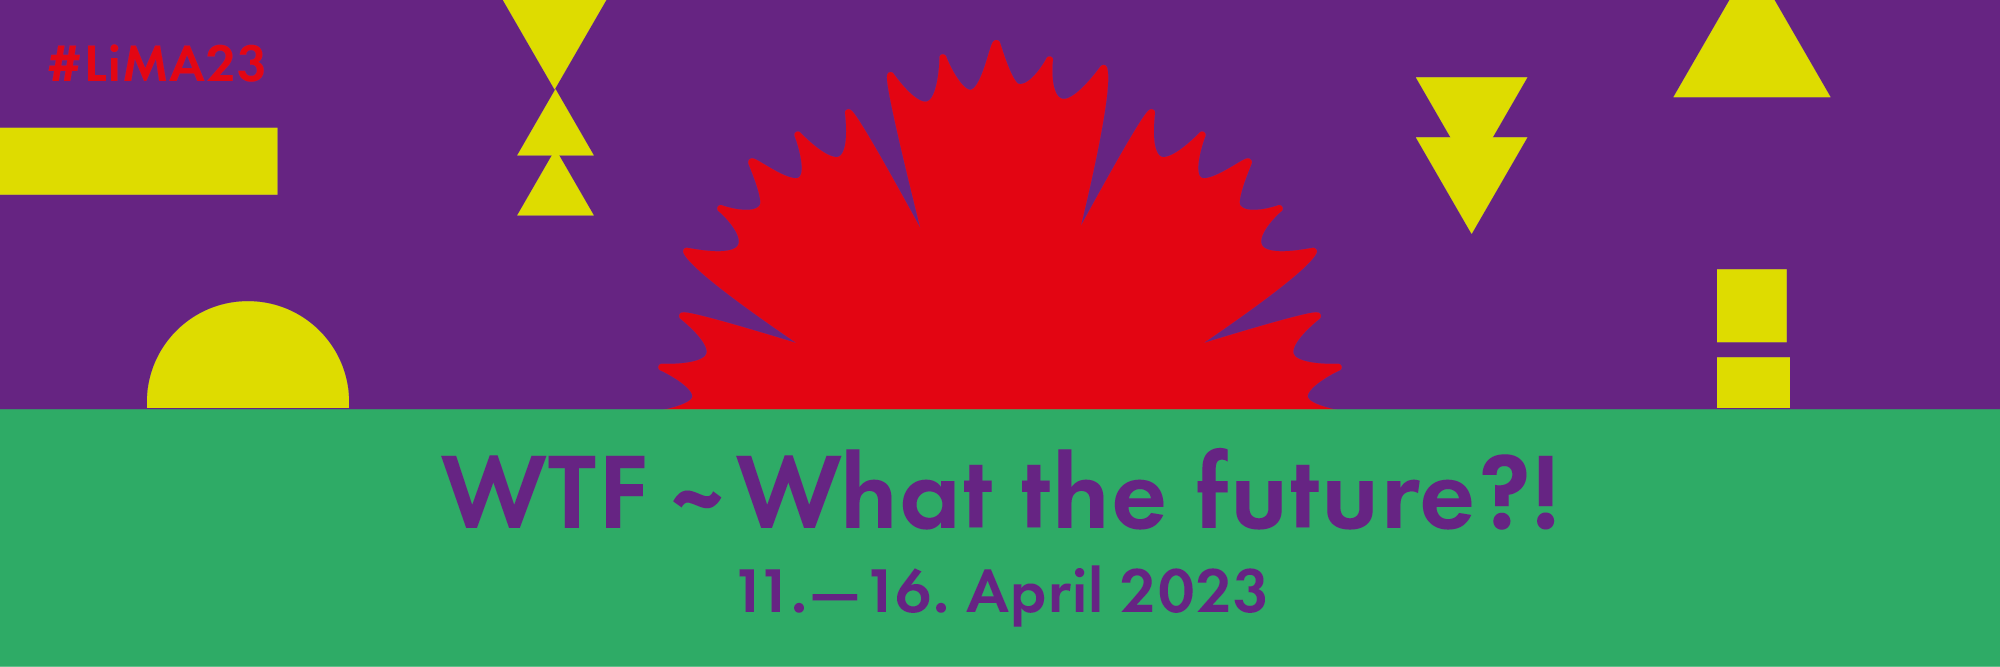 Abstrakte Formen stellen einen Sonnenaufgang dar. Auf grünem Hintergrund steht: WTF What The Future?! 11.-16. April 2023